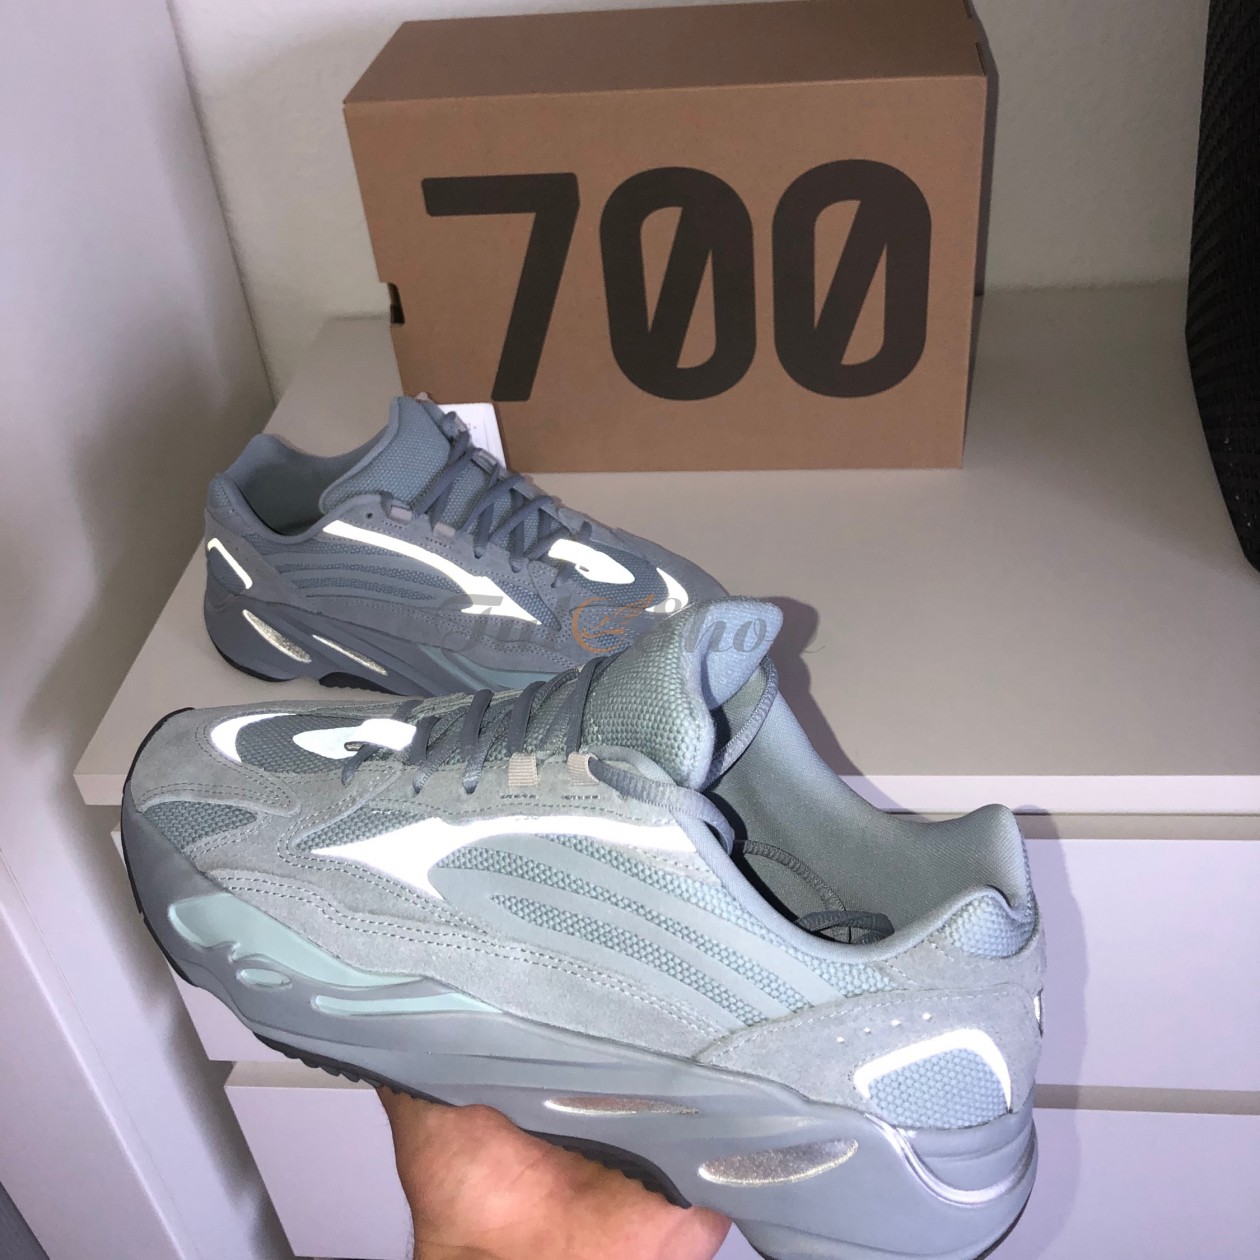 Giày Yeezy Boost 700 V2 Hospital Blue vừa mới ra mắt giá bao nhiêu?